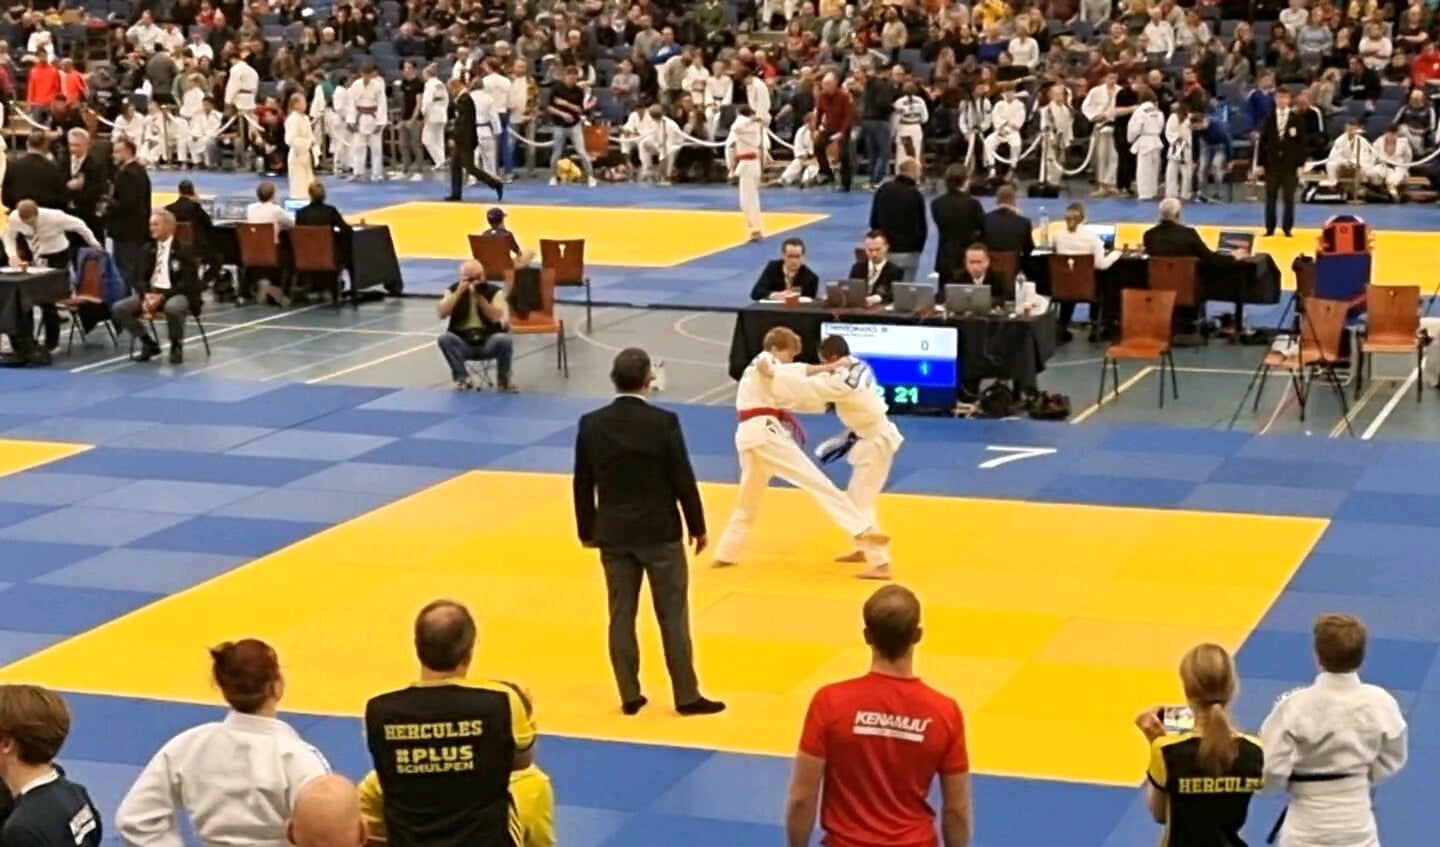 Judowedstrijd Olav Vrieling